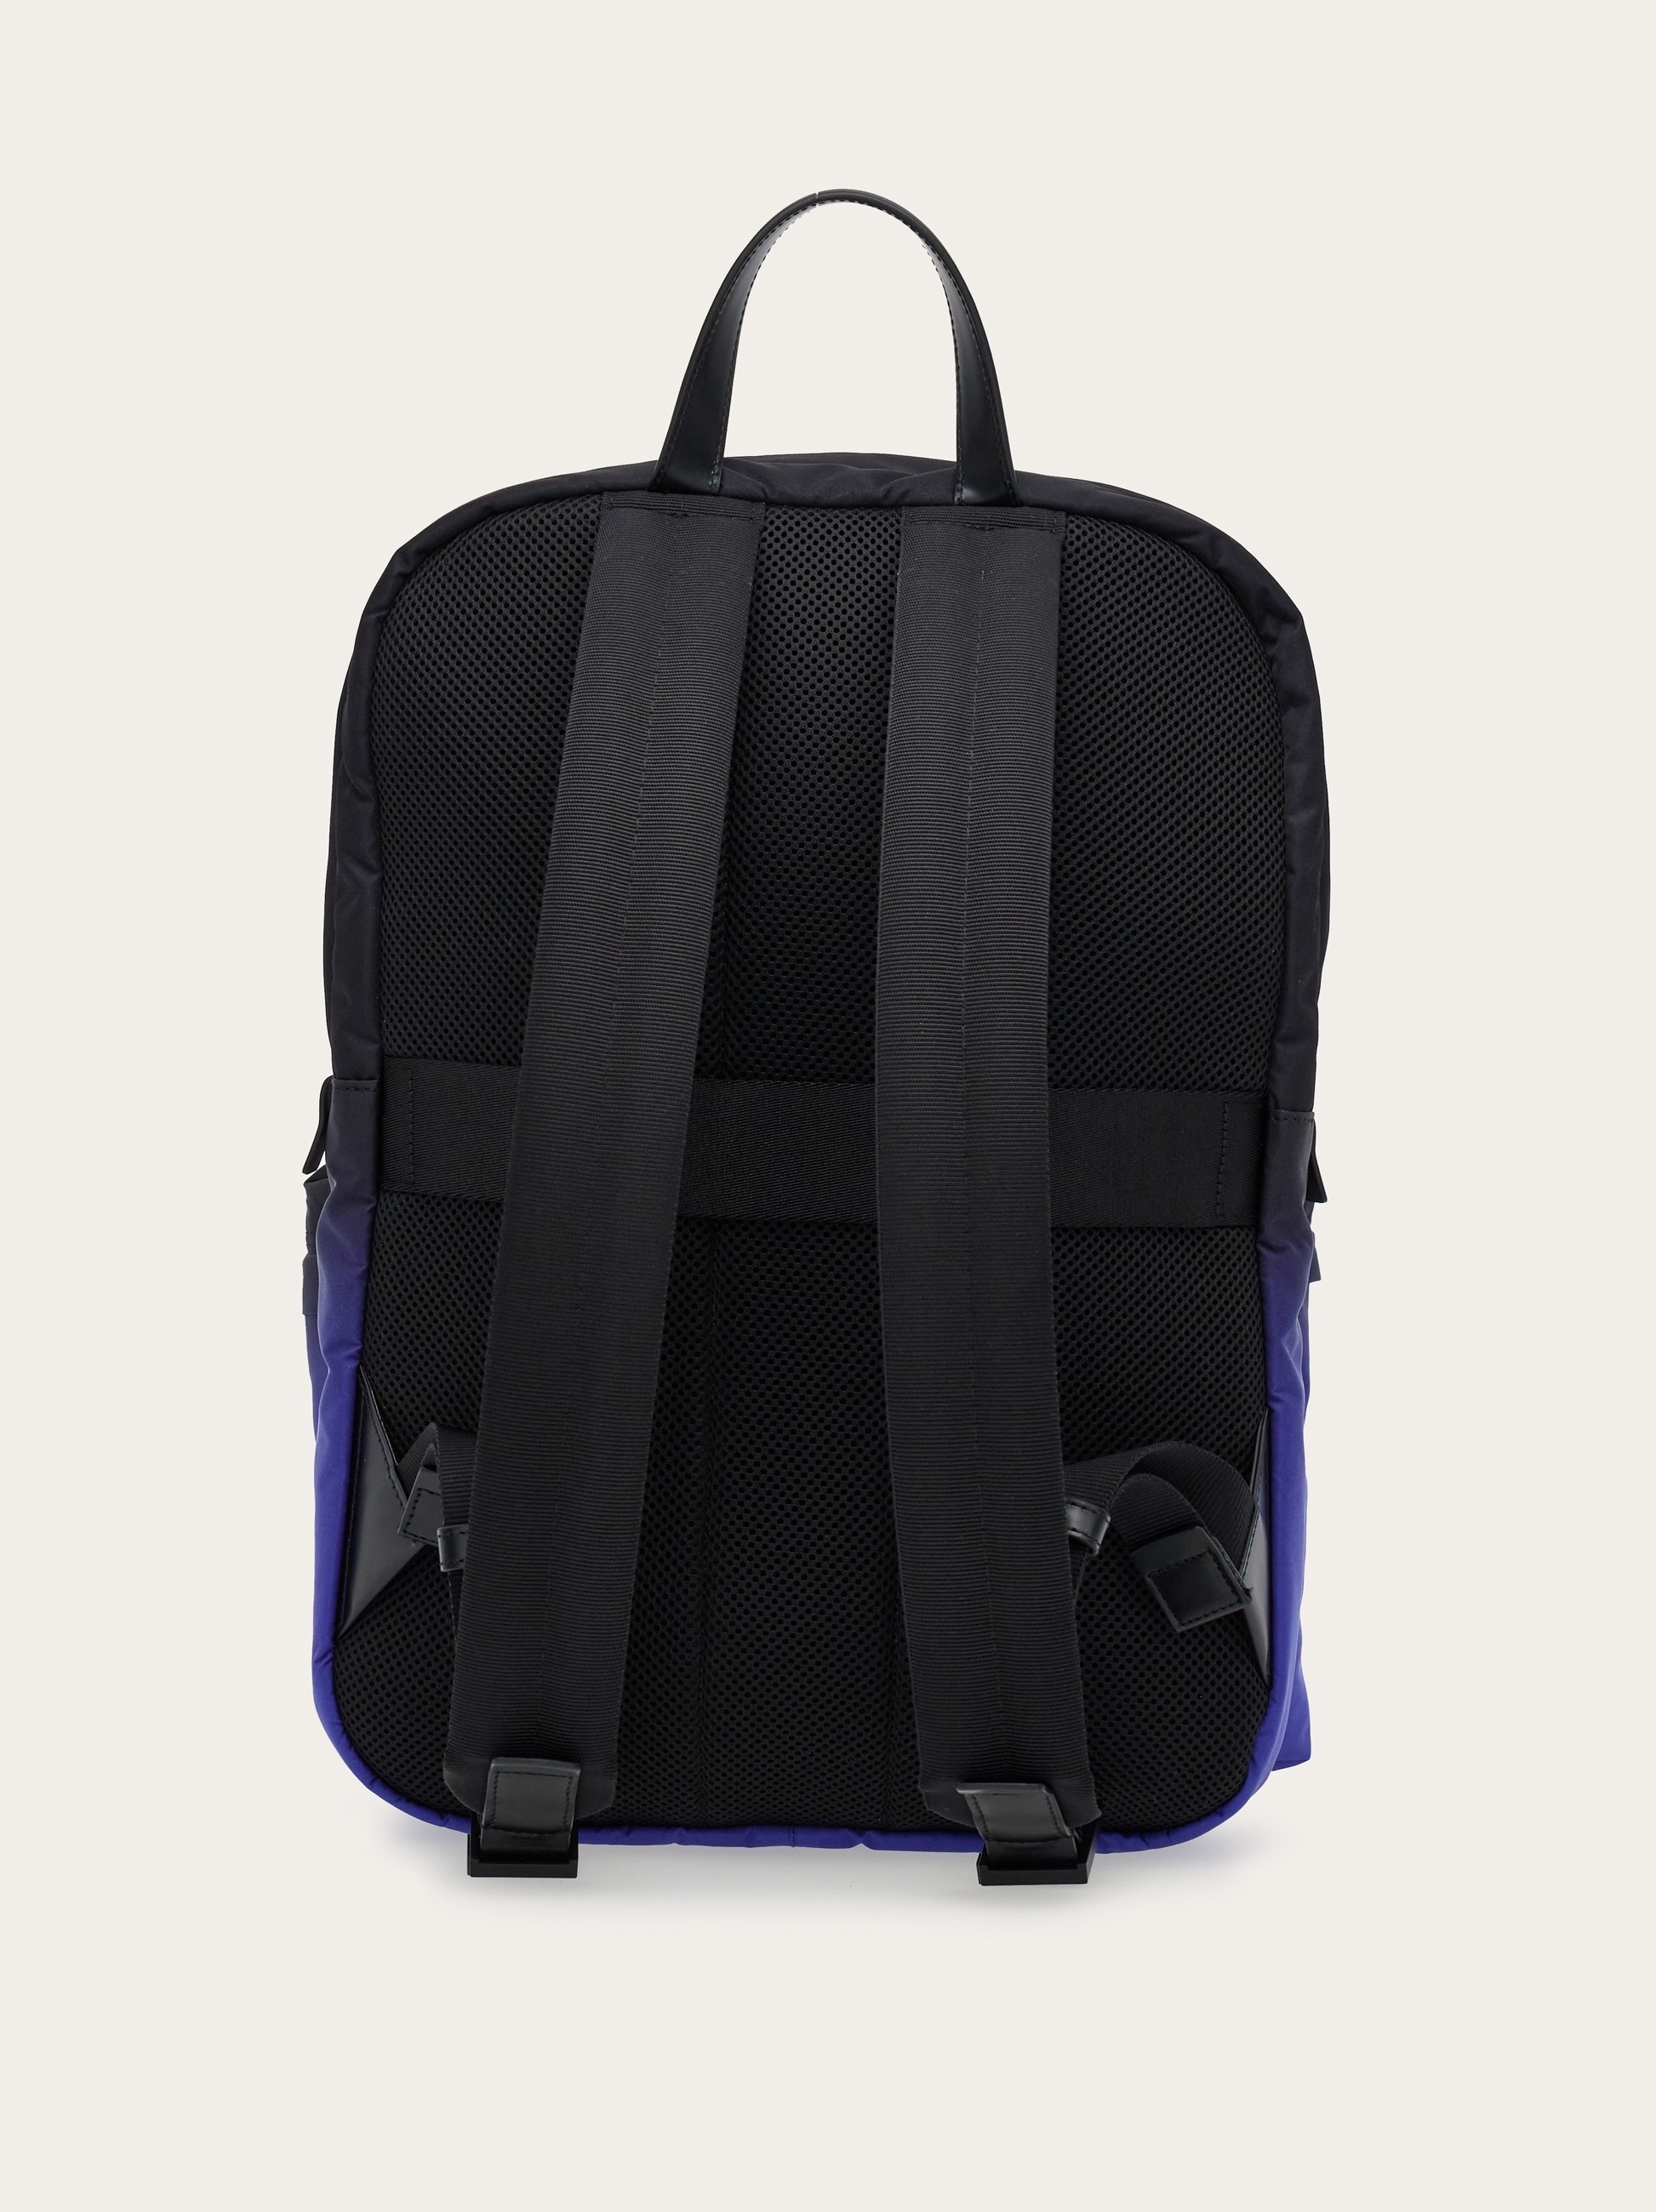 Dual tone backpack - 4